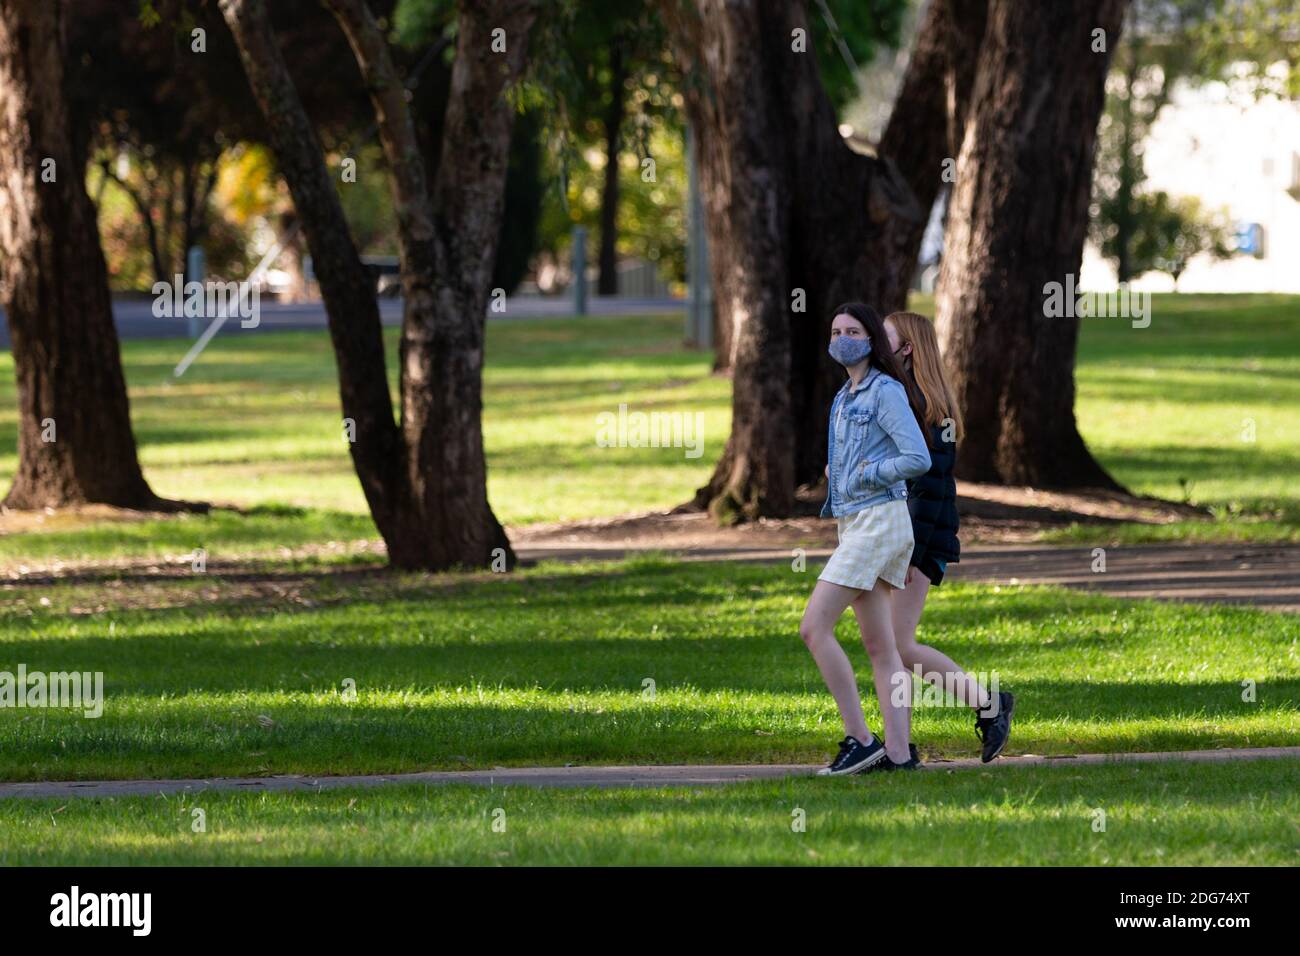 Wangaratta, Australie, 1er octobre 2020. On voit de jeunes filles marcher dans le parc pendant la COVID-19 à Wangaratta, en Australie. À MESURE que les restrictions sont assouplies dans la région de Victoria, les entreprises ont du mal à se rétablir après certains des blocages les plus stricts et les plus inutiles dans le monde.Credit: Dave Hewison/Alamy Live News Banque D'Images